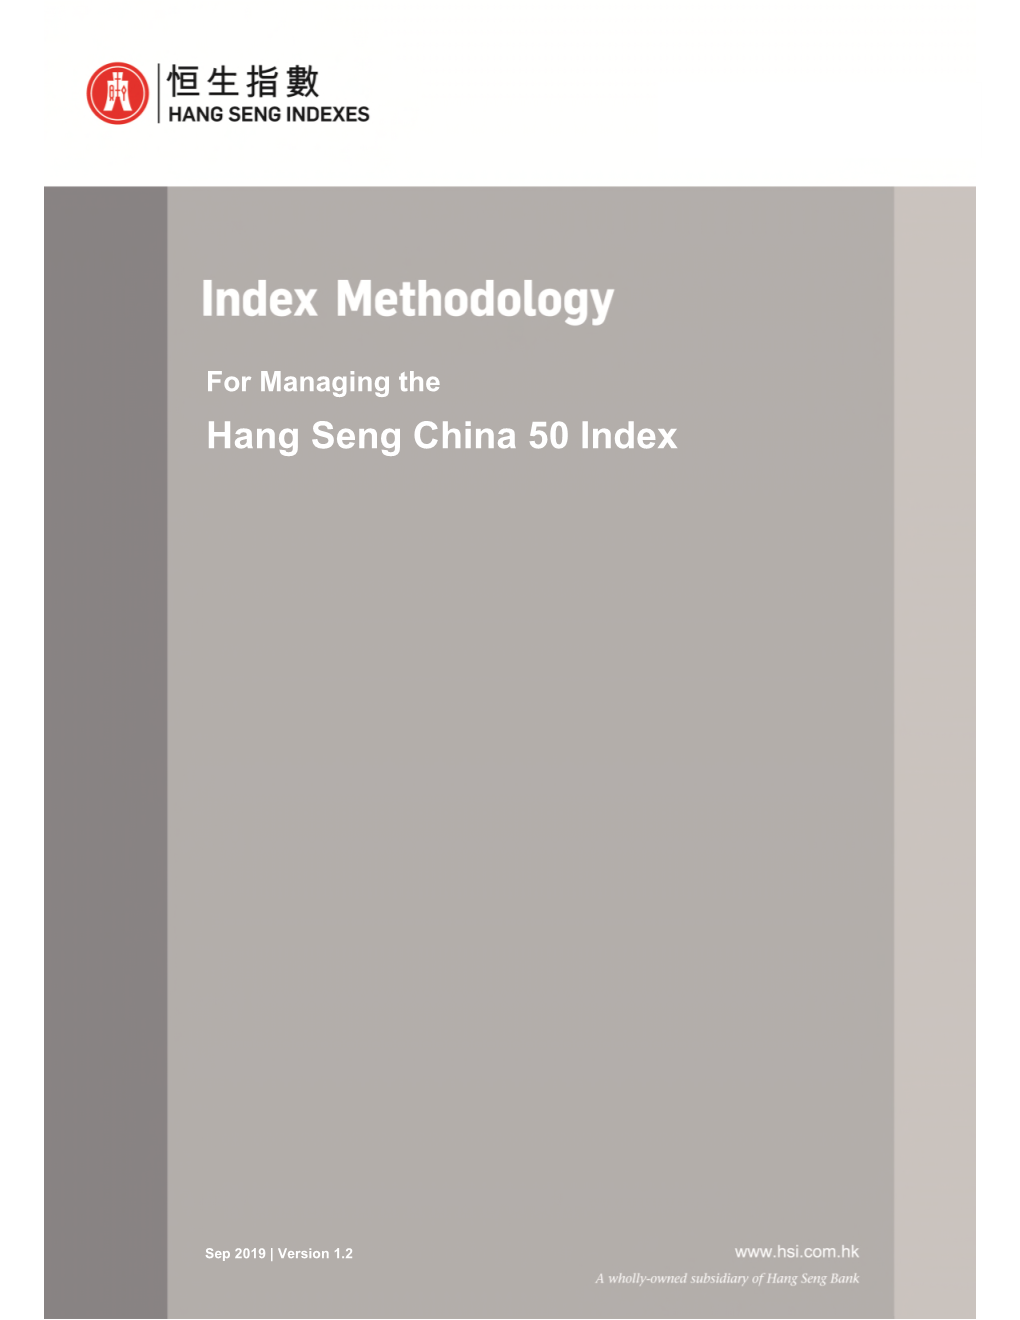 Hang Seng China 50 Index View